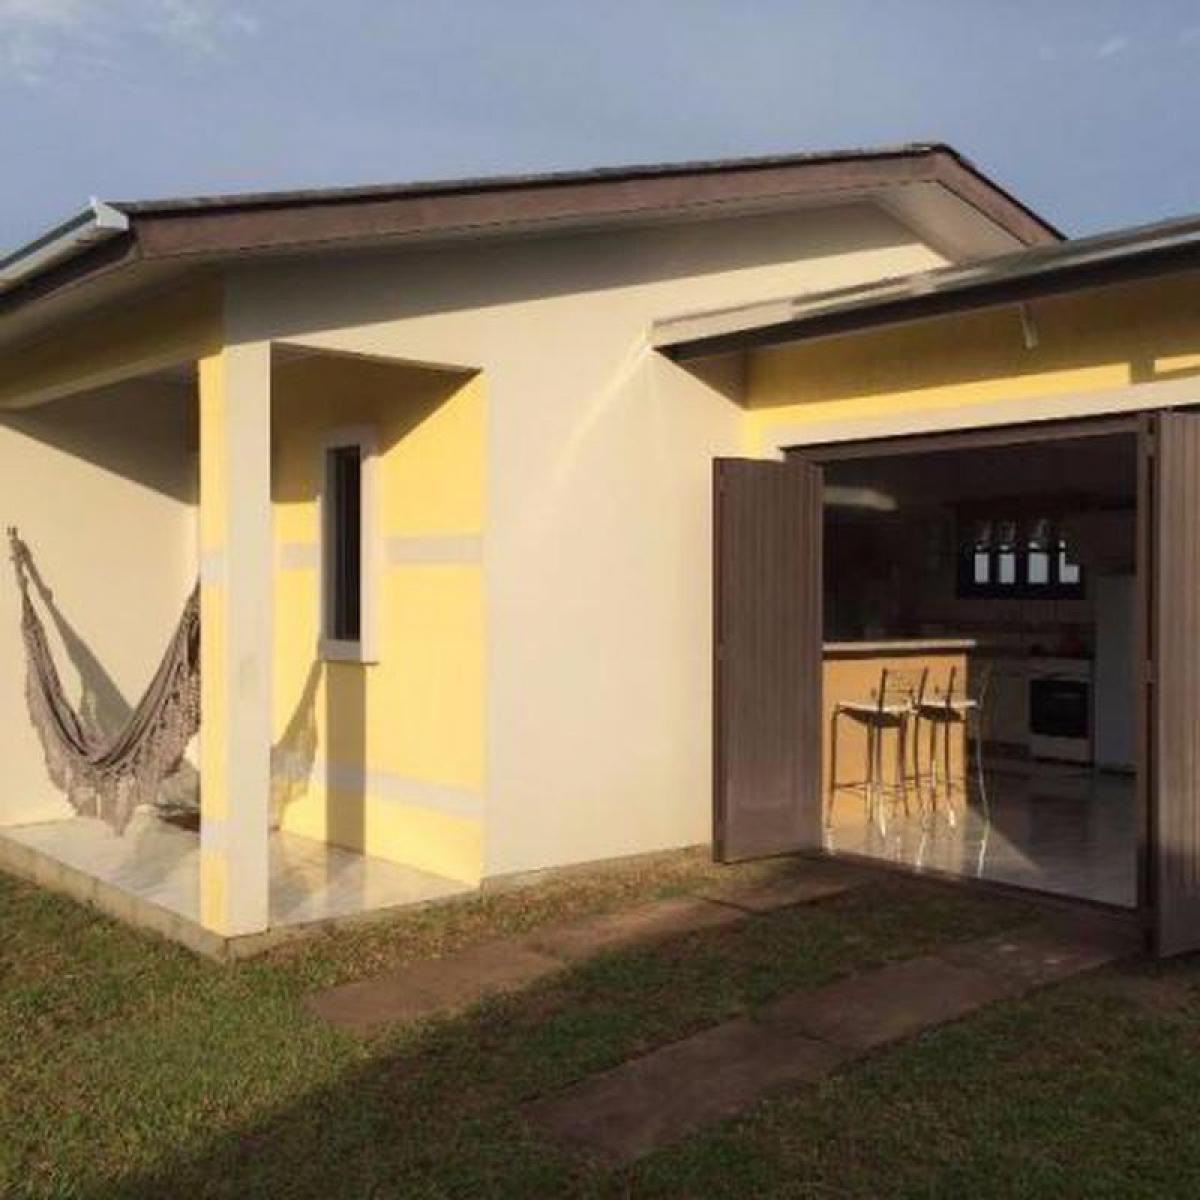 Picture of Home For Sale in Arroio Do Sal, Rio Grande do Sul, Brazil